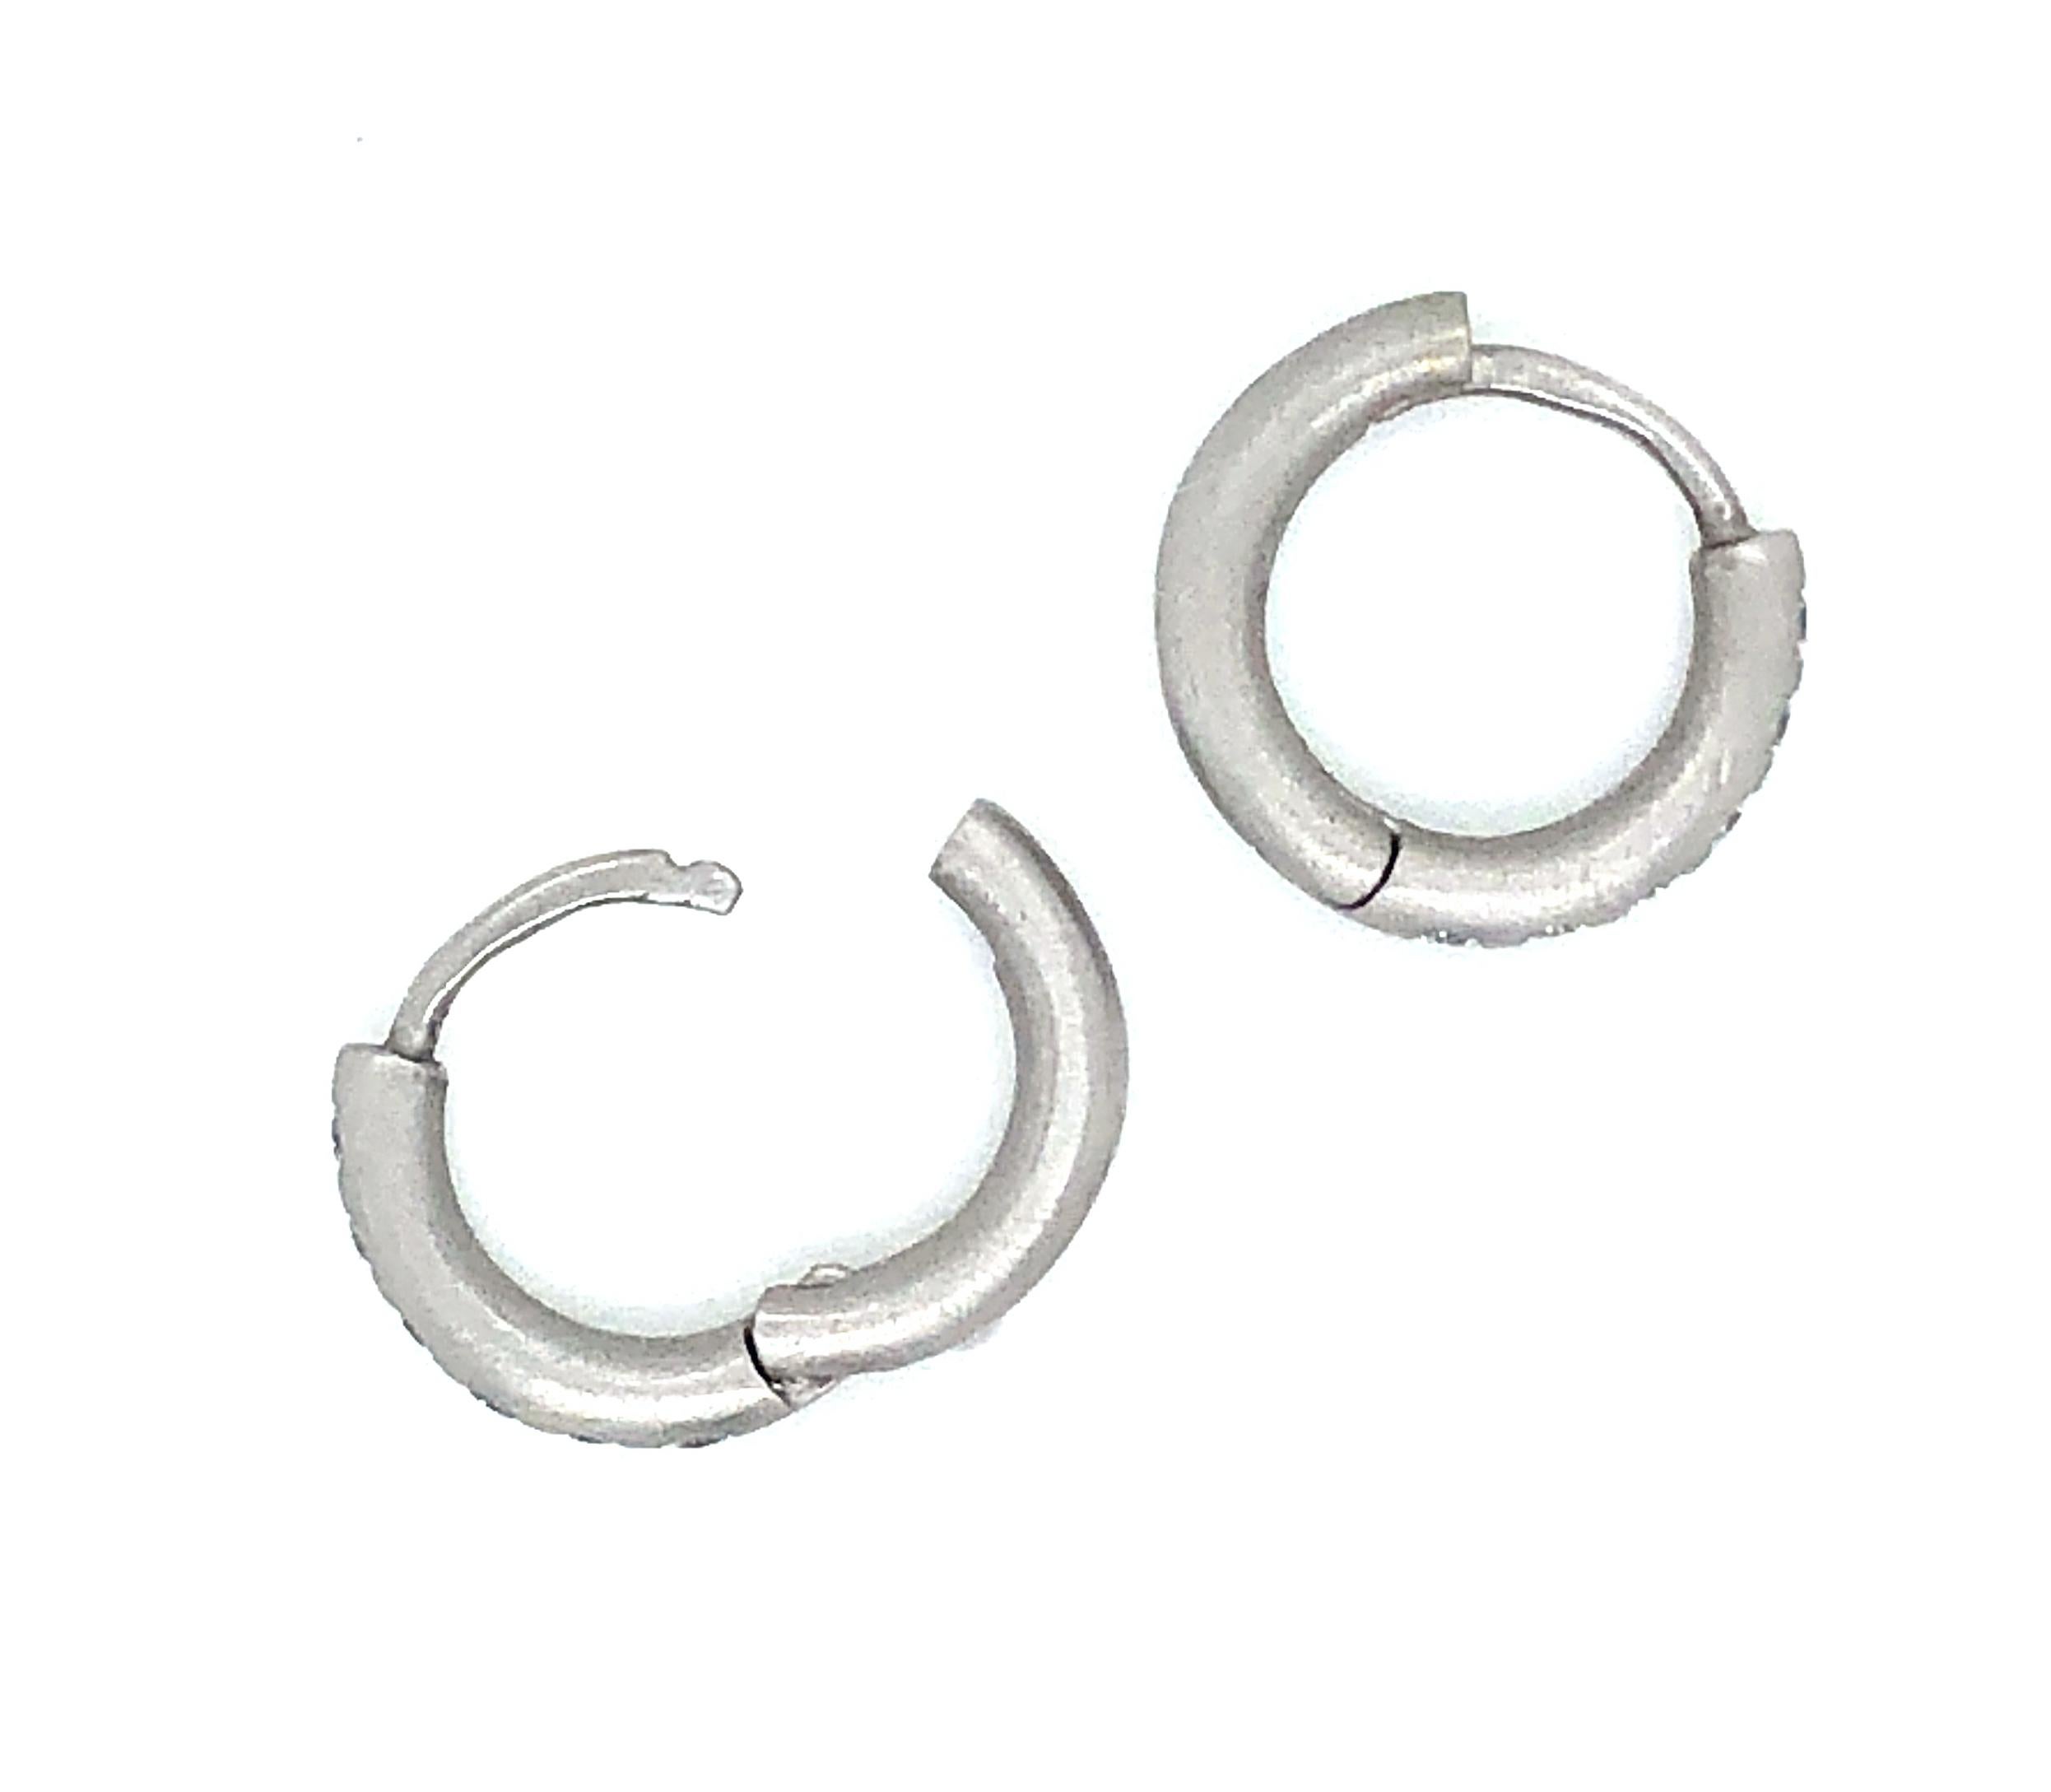 micro pave diamond hoop earrings